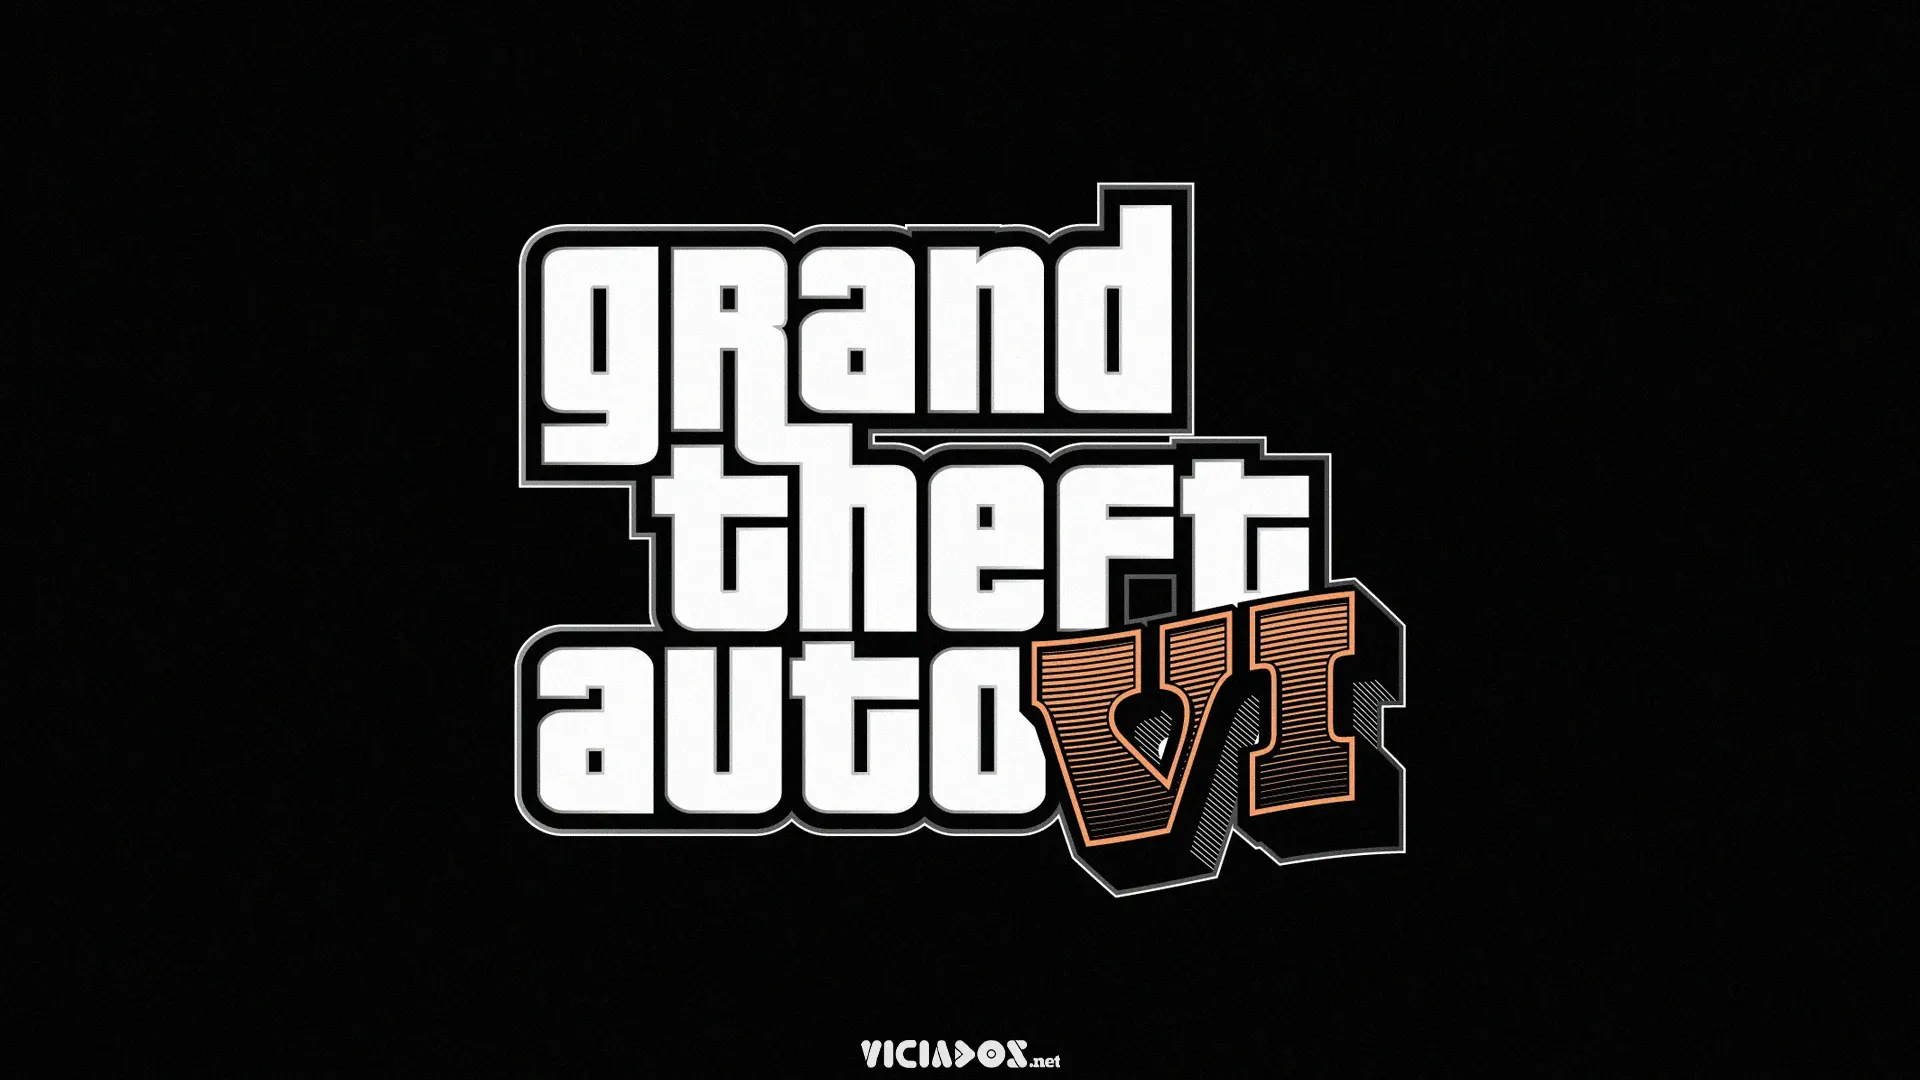 GTA 6 | Rockstar Games revela trailer de Grand Theft Auto VI 2023 Viciados